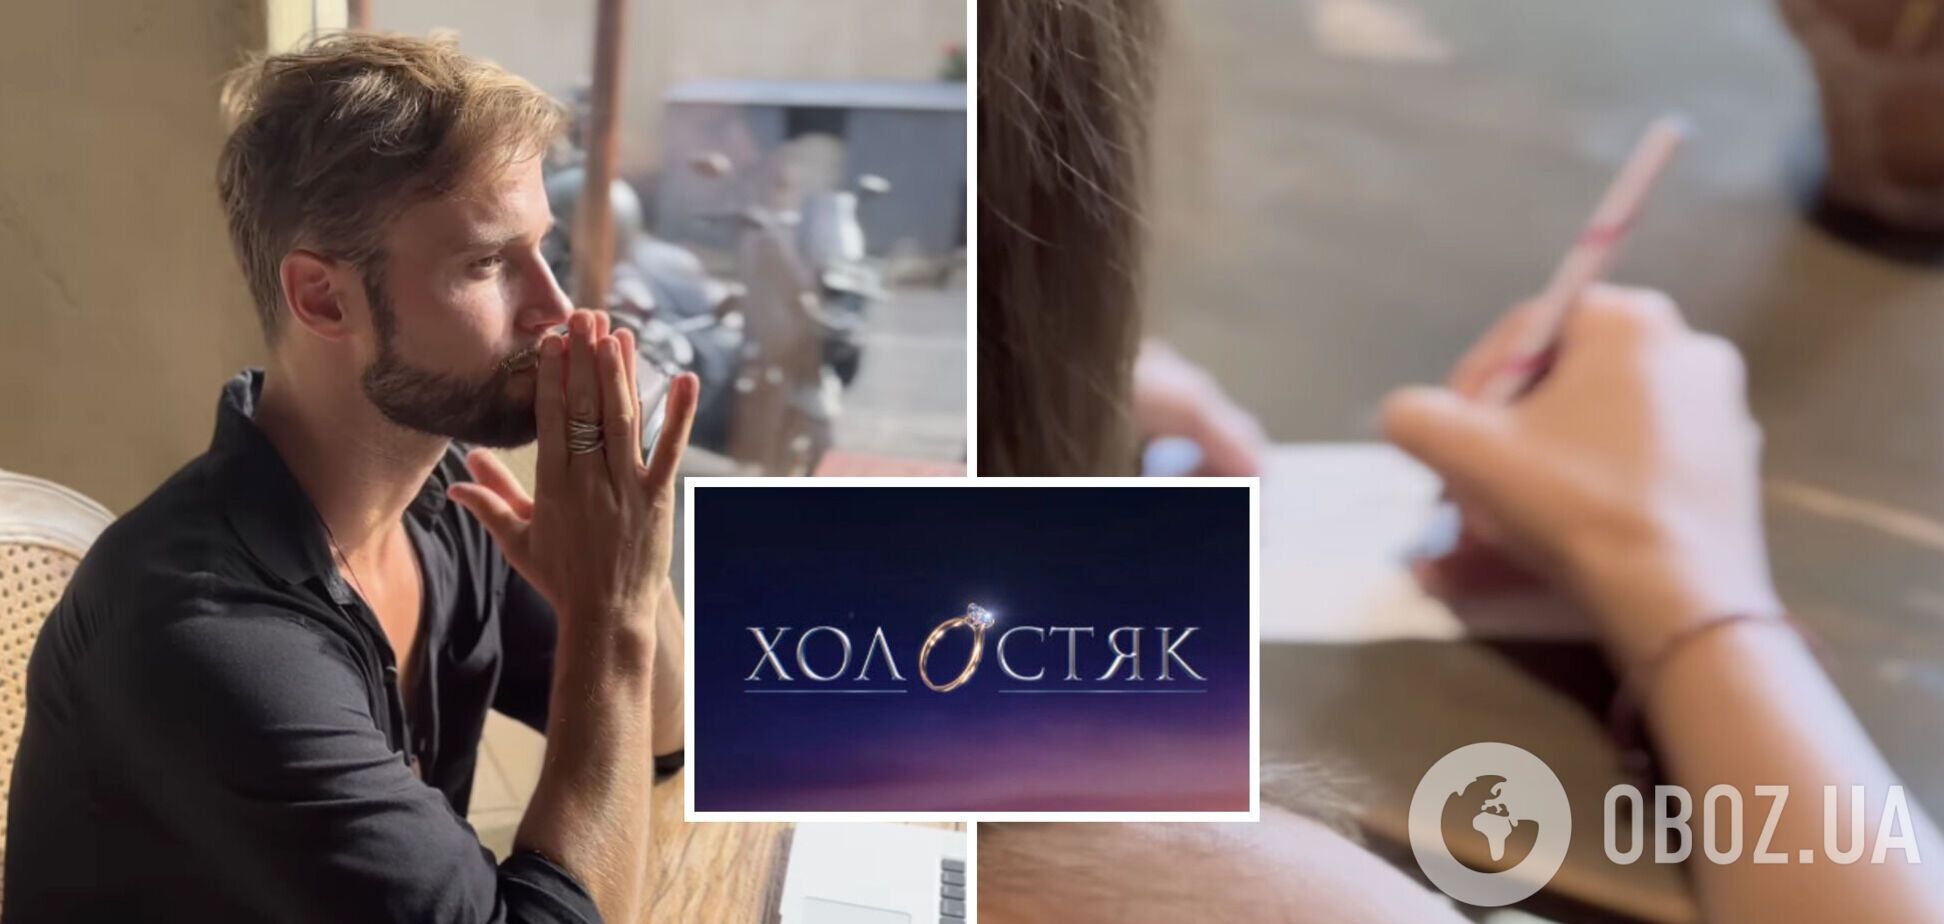 'Холостяк' продолжается': Топольский устроил шоу из своего знакомства с девушкой и рассмешил подписчиков